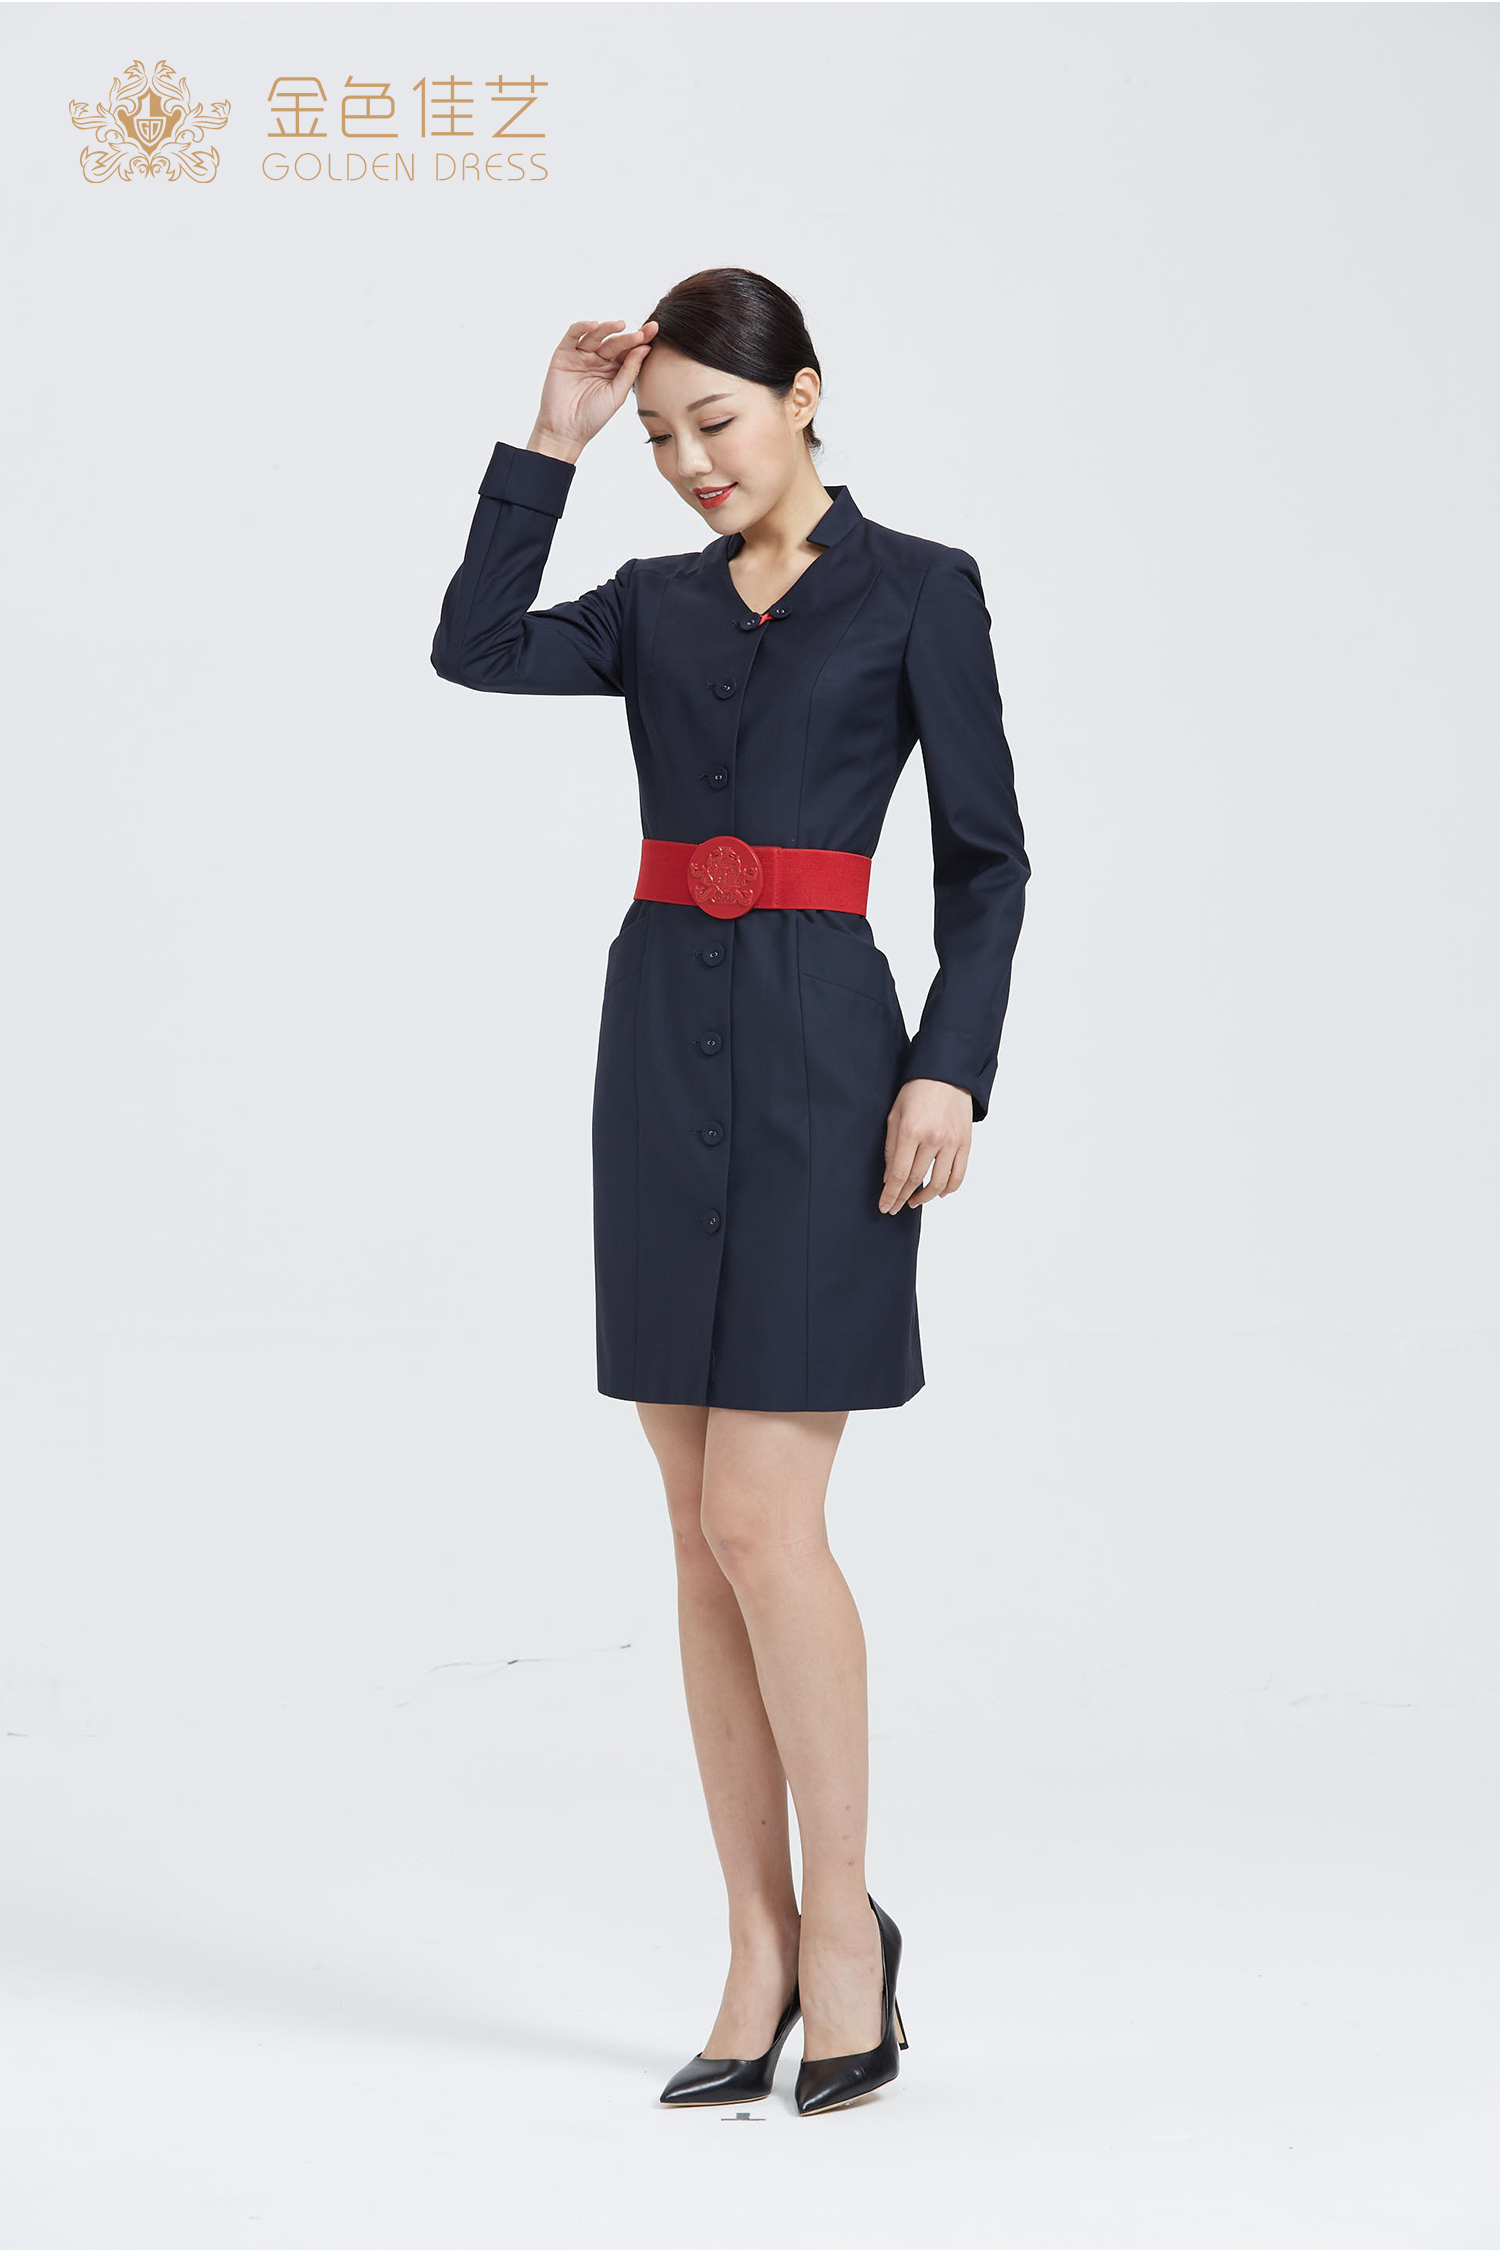 金色佳艺 中国最大的空姐制服 设计 生产 零售 一站式服务提供商